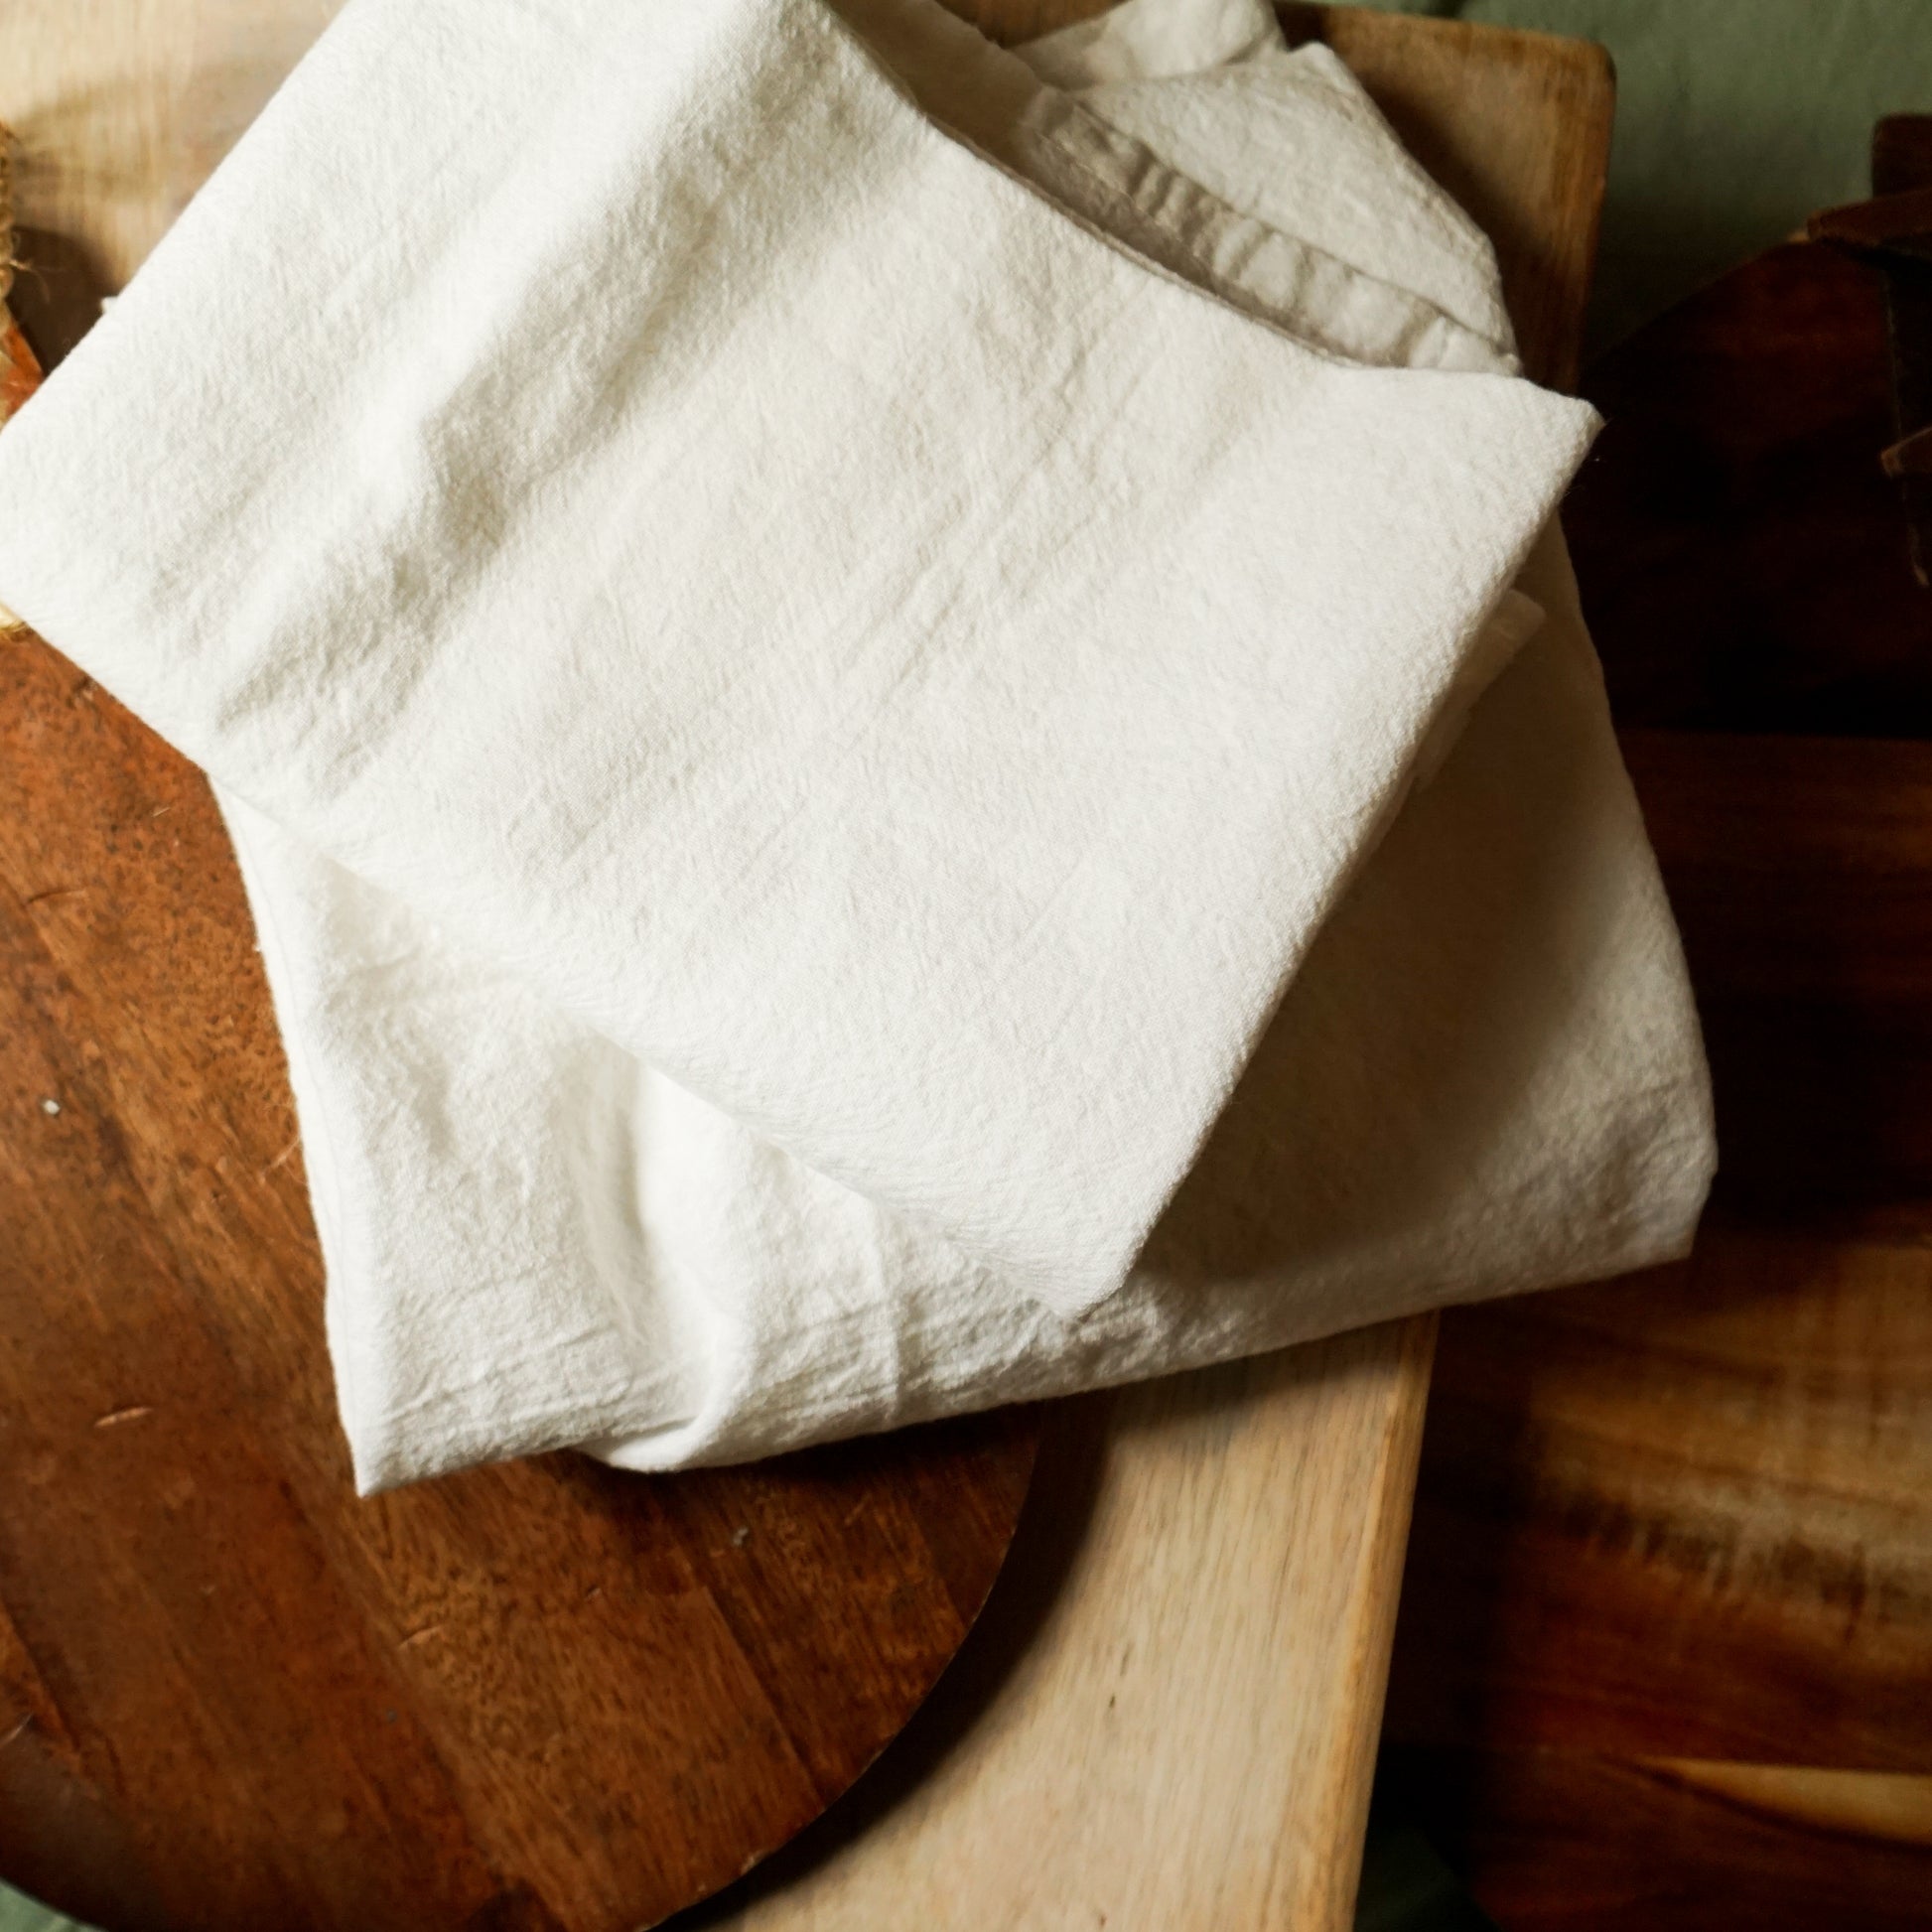 Flour Sack dish towel